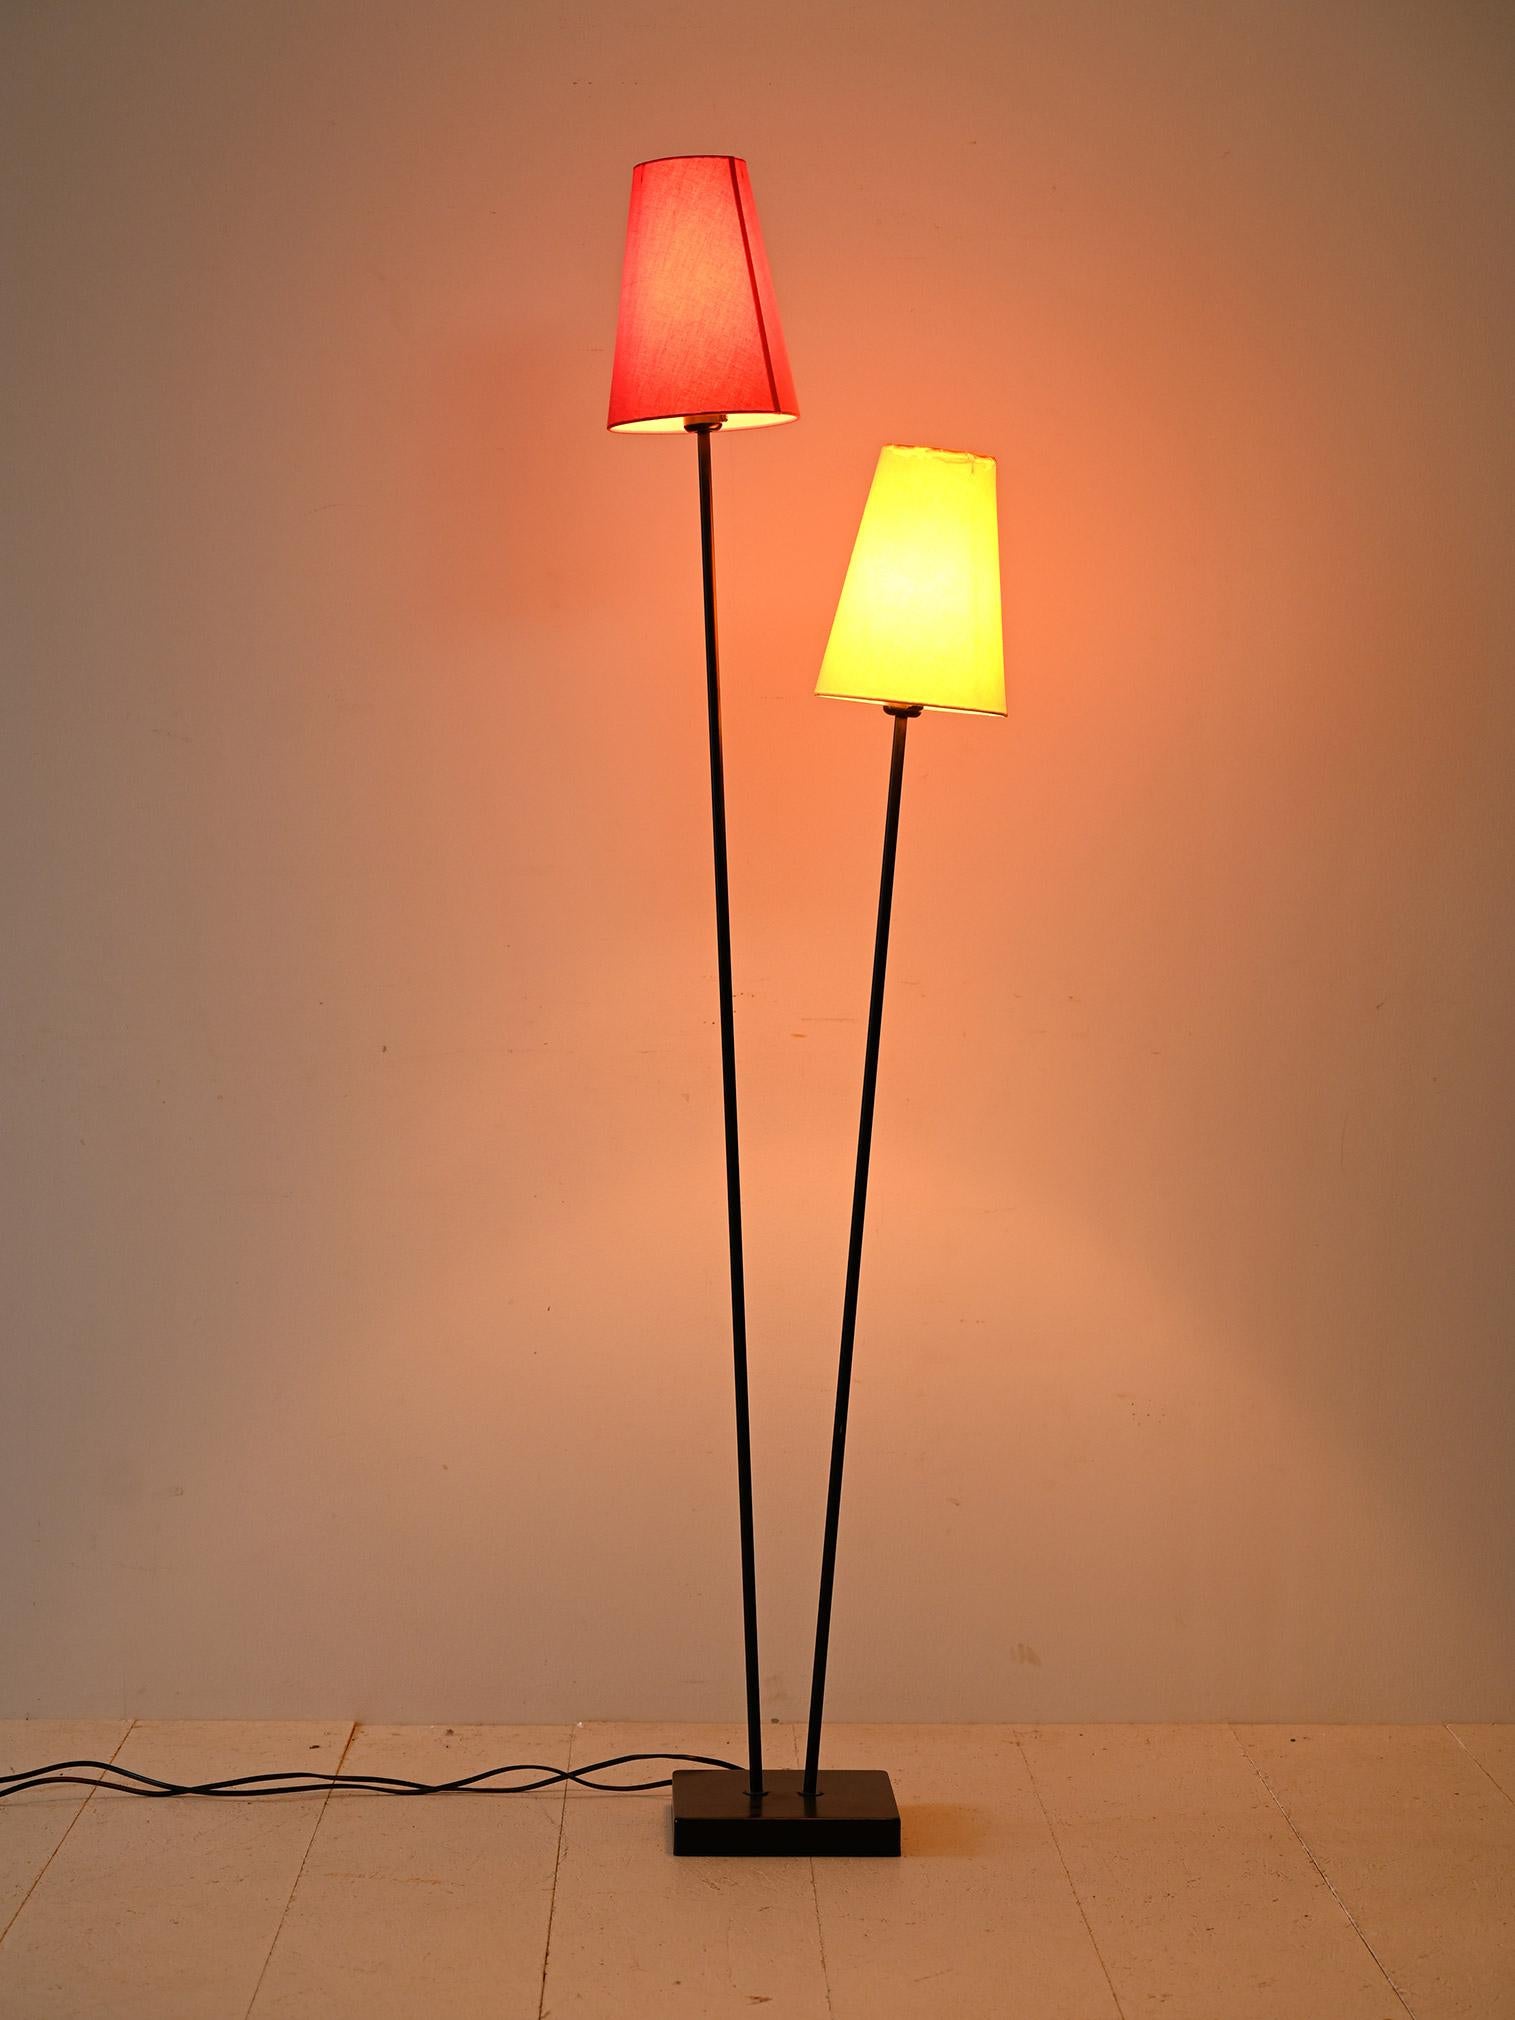 Lampe nordique avec double abat-jour.

Cette charmante lampe vintage se distingue par sa structure en métal noir, qui ajoute une touche de modernité à son design nordique. Les deux abat-jour en tissu, l'un rouge et l'autre jaune, apportent un accent